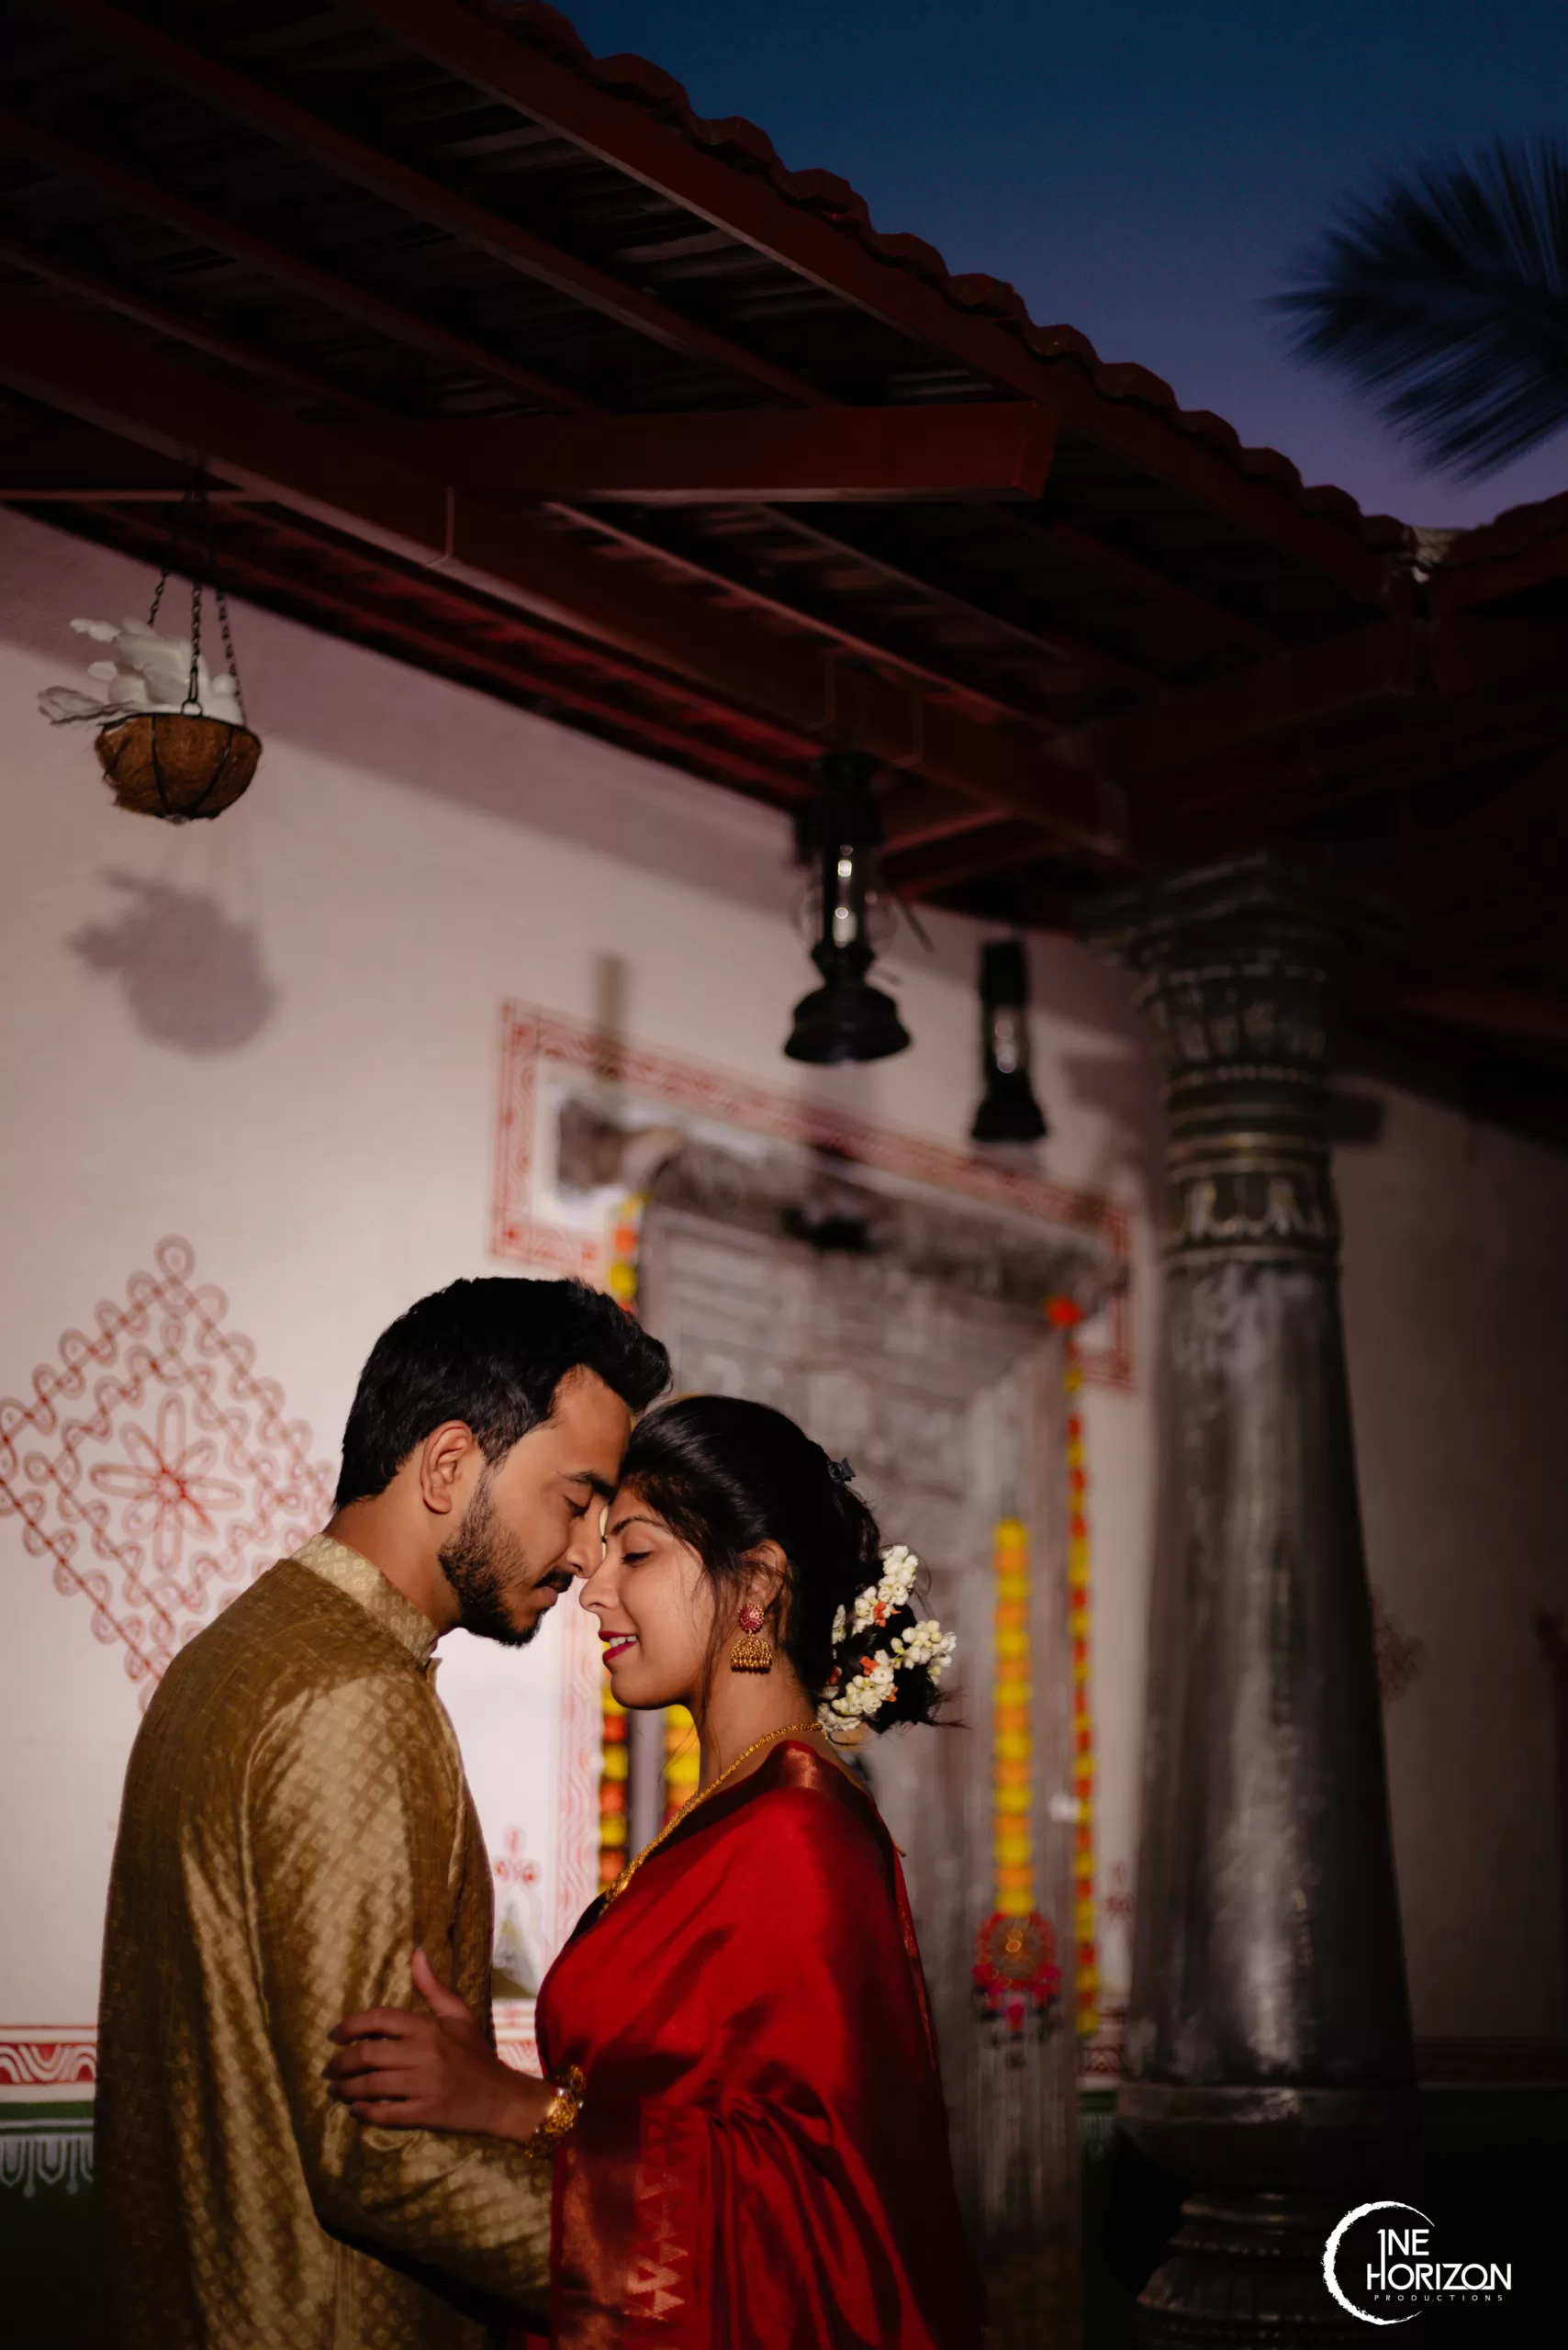 Latest Bengali Bridal Photoshoot Poses Ideas in 2024